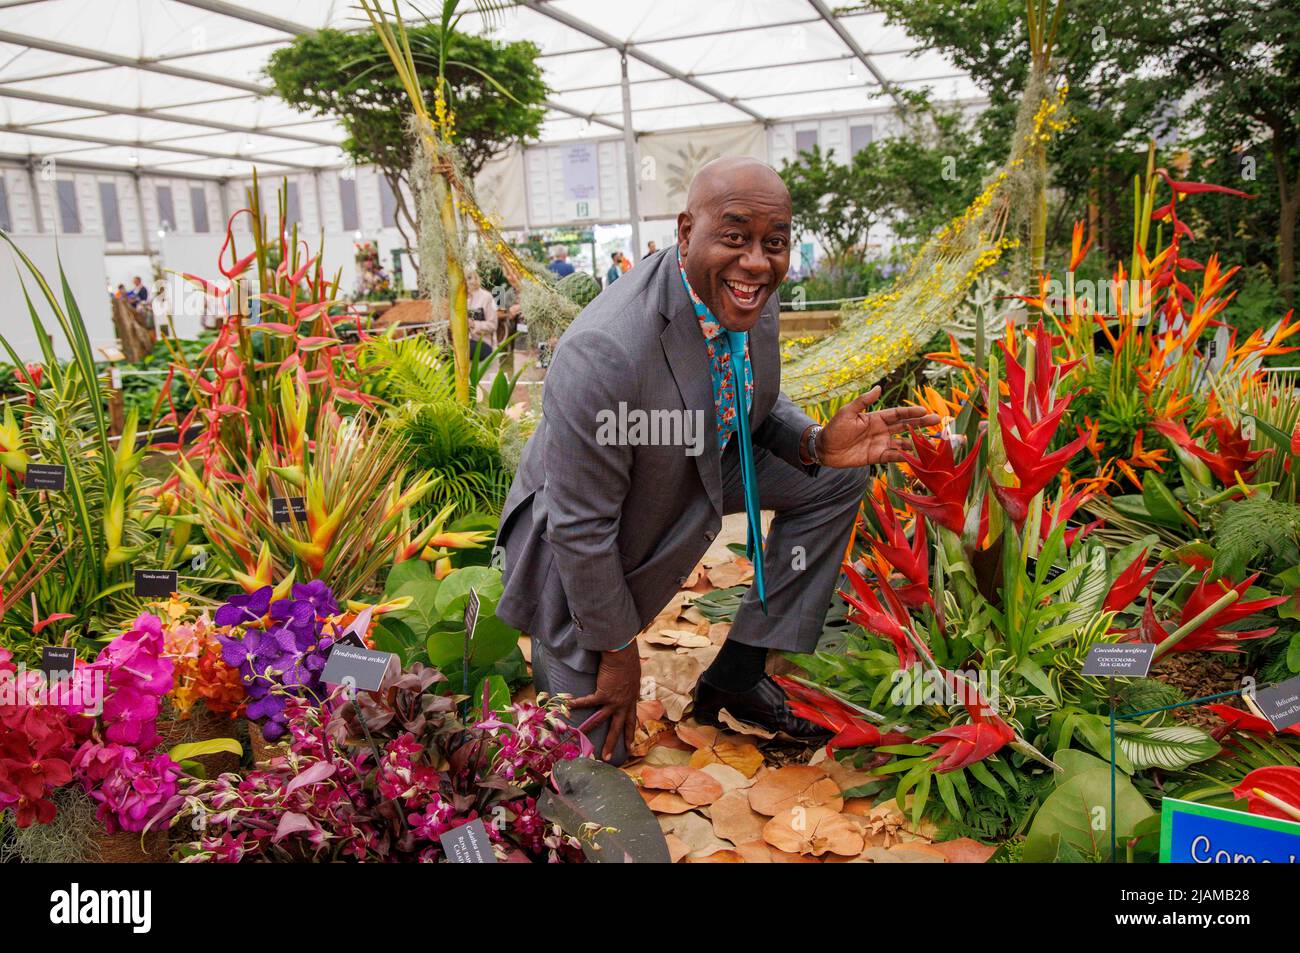 Ainsley Harriott, chef anglais et présentateur de télévision, dans le jardin des Caraïbes au RHS Chelsea Flower Show Banque D'Images